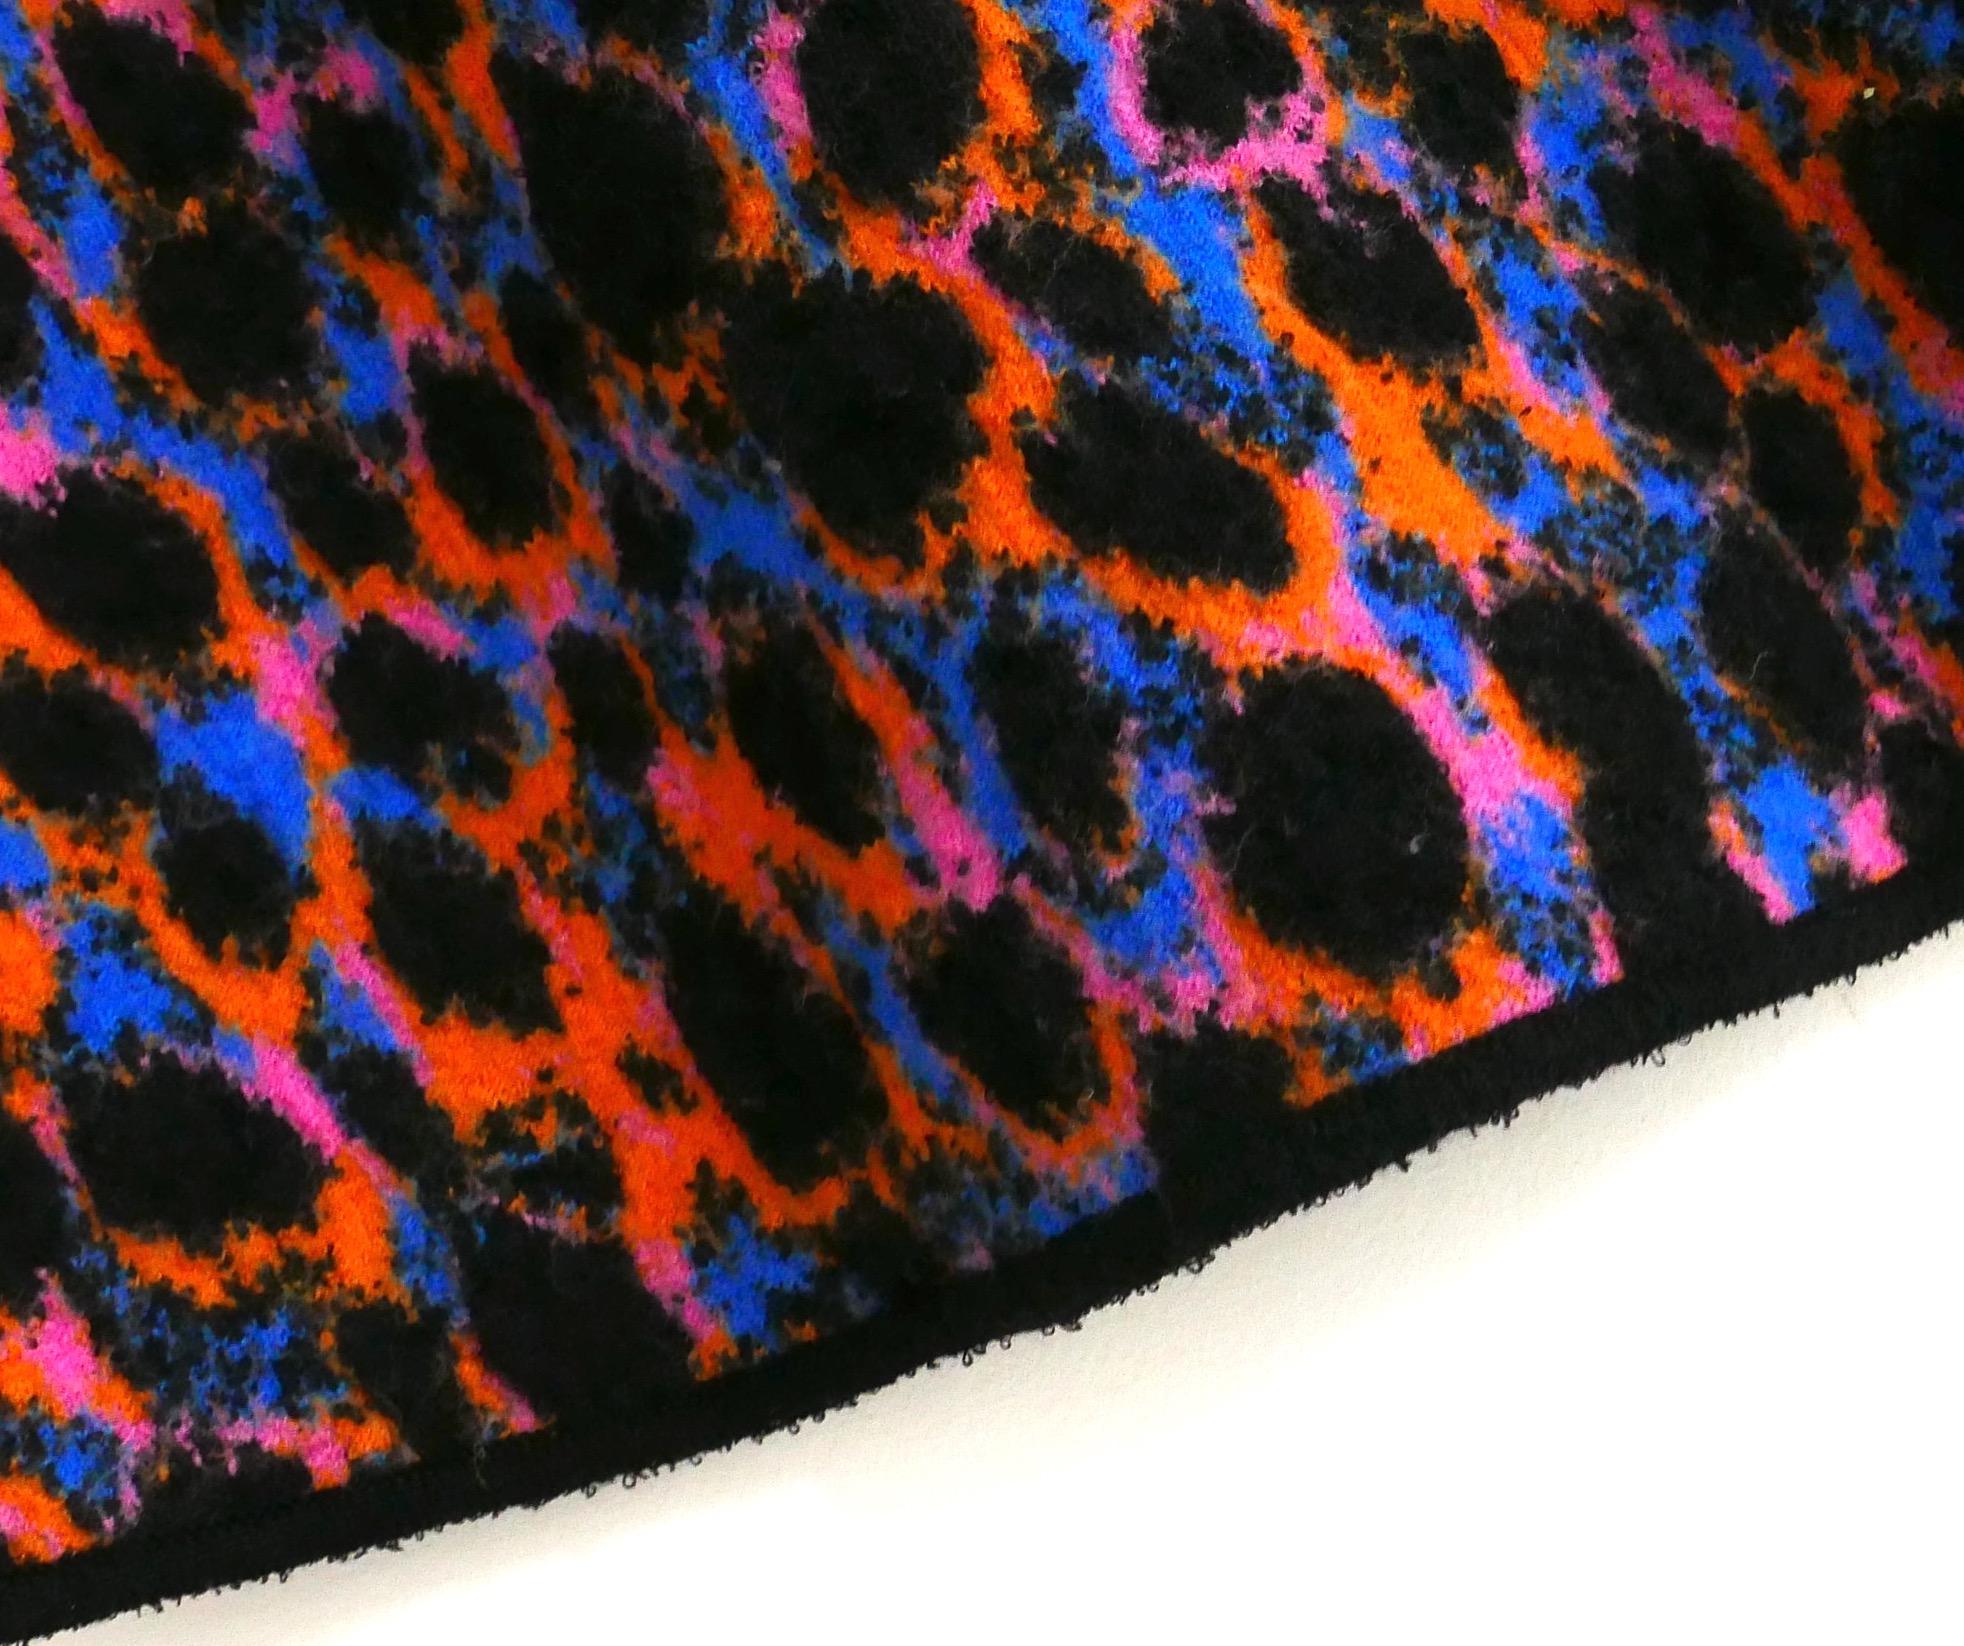 Erstaunlich Dior Leopard Neon Rock aus dem Frühjahr 2022 Collection. gekauft für £ 1950 und neu mit Tag. Sie ist aus einer dicken, gefilzten Wollmischung mit einem leuchtenden Leopardenmuster in der Farbe Fantaisie gefertigt und hat kontrastierende